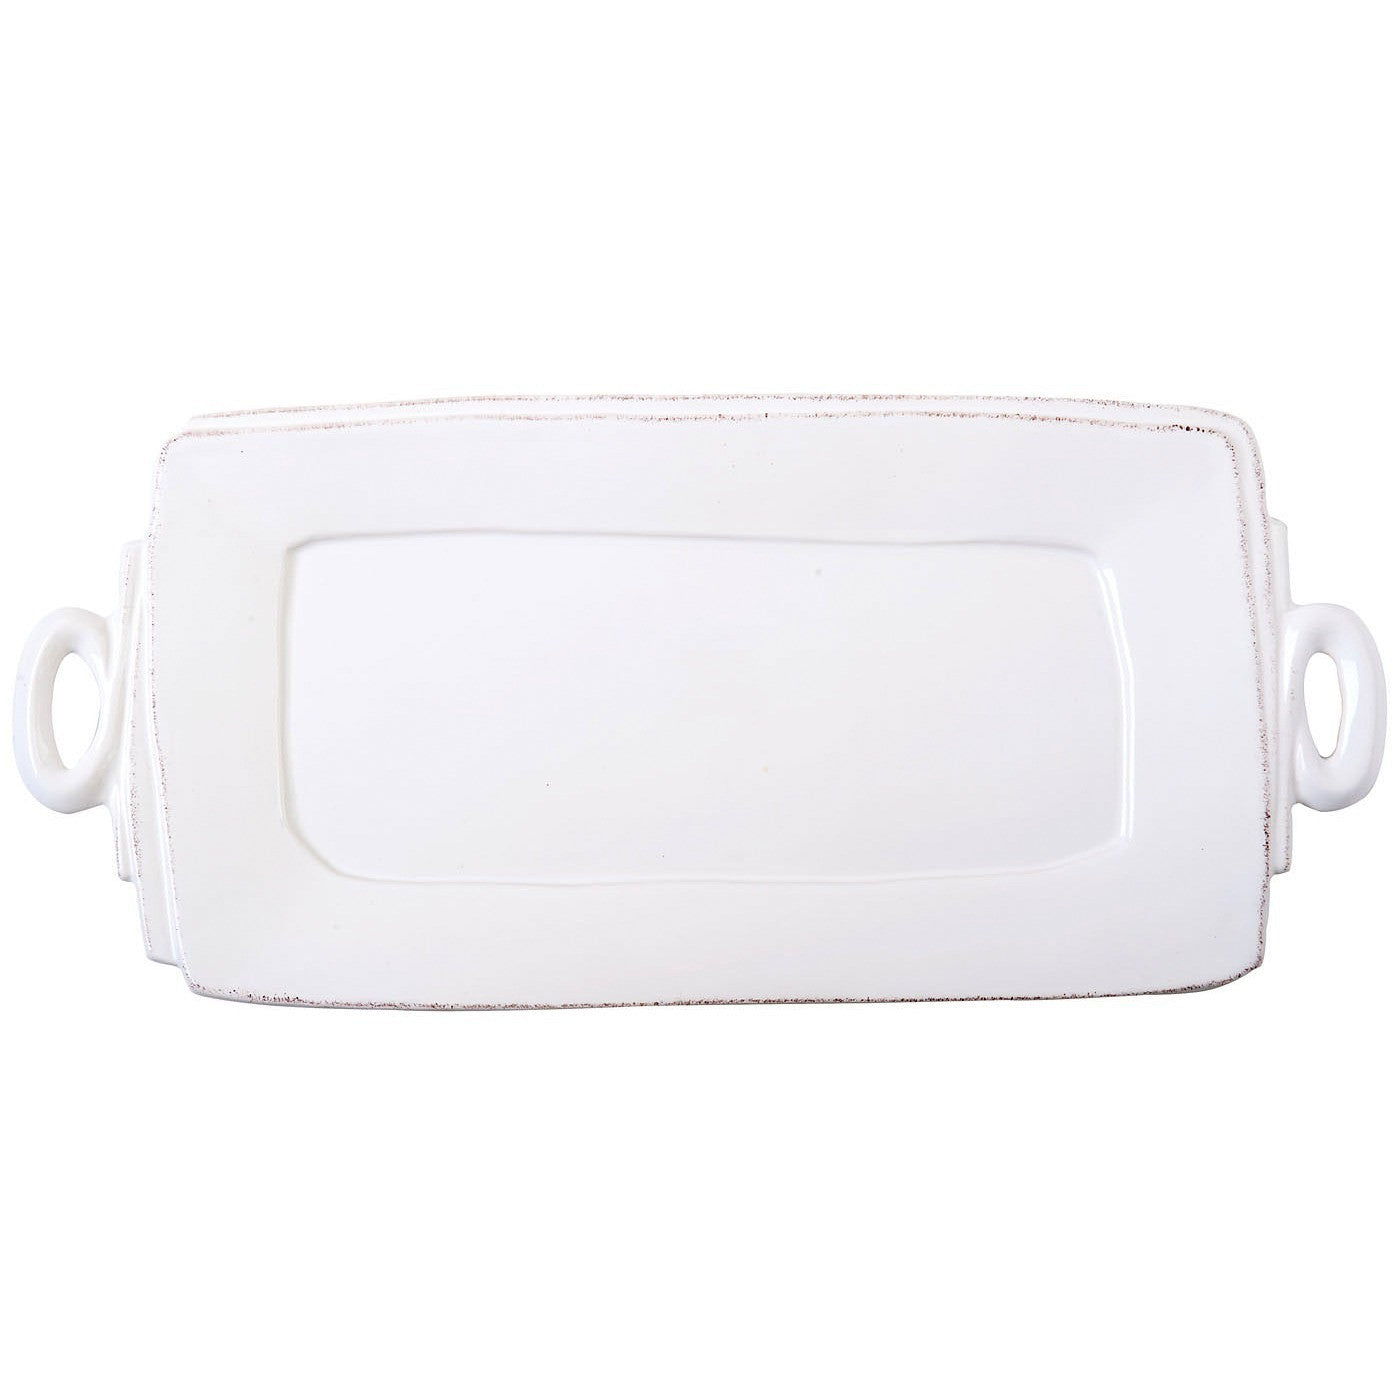 VIETRI: Lastra White Handled Rectangular Platter - Artistica.com